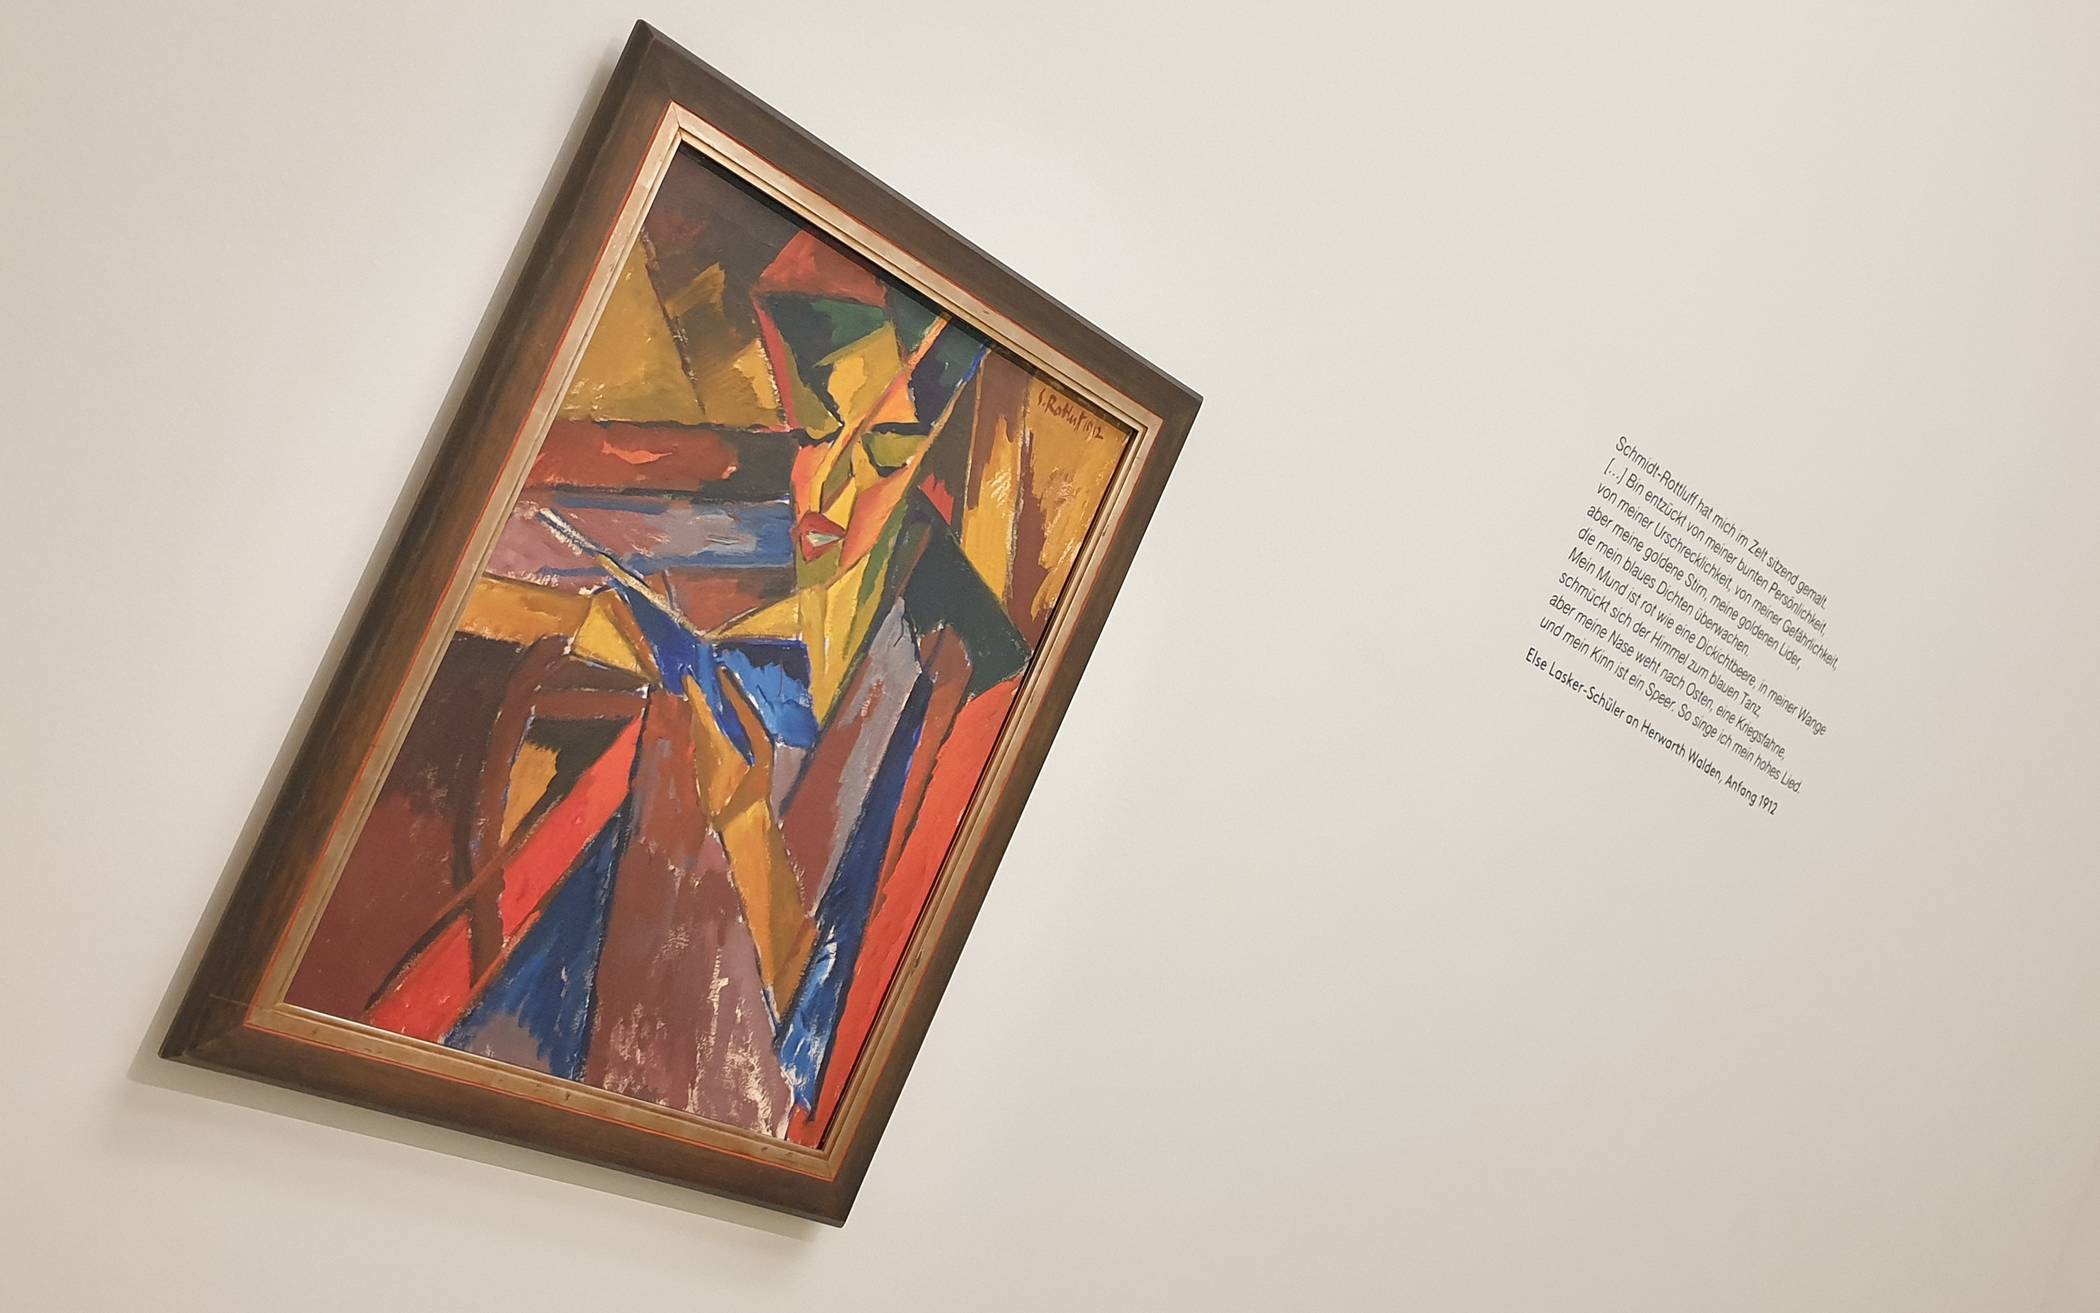  Karl Schmidt-Rottluffs Expressionismus-Gemälde "Lesende (Else Lasker-Schüler)"  wird im Von der Heydt-Museum begleitet von einem Text der Dichterin selbst.  